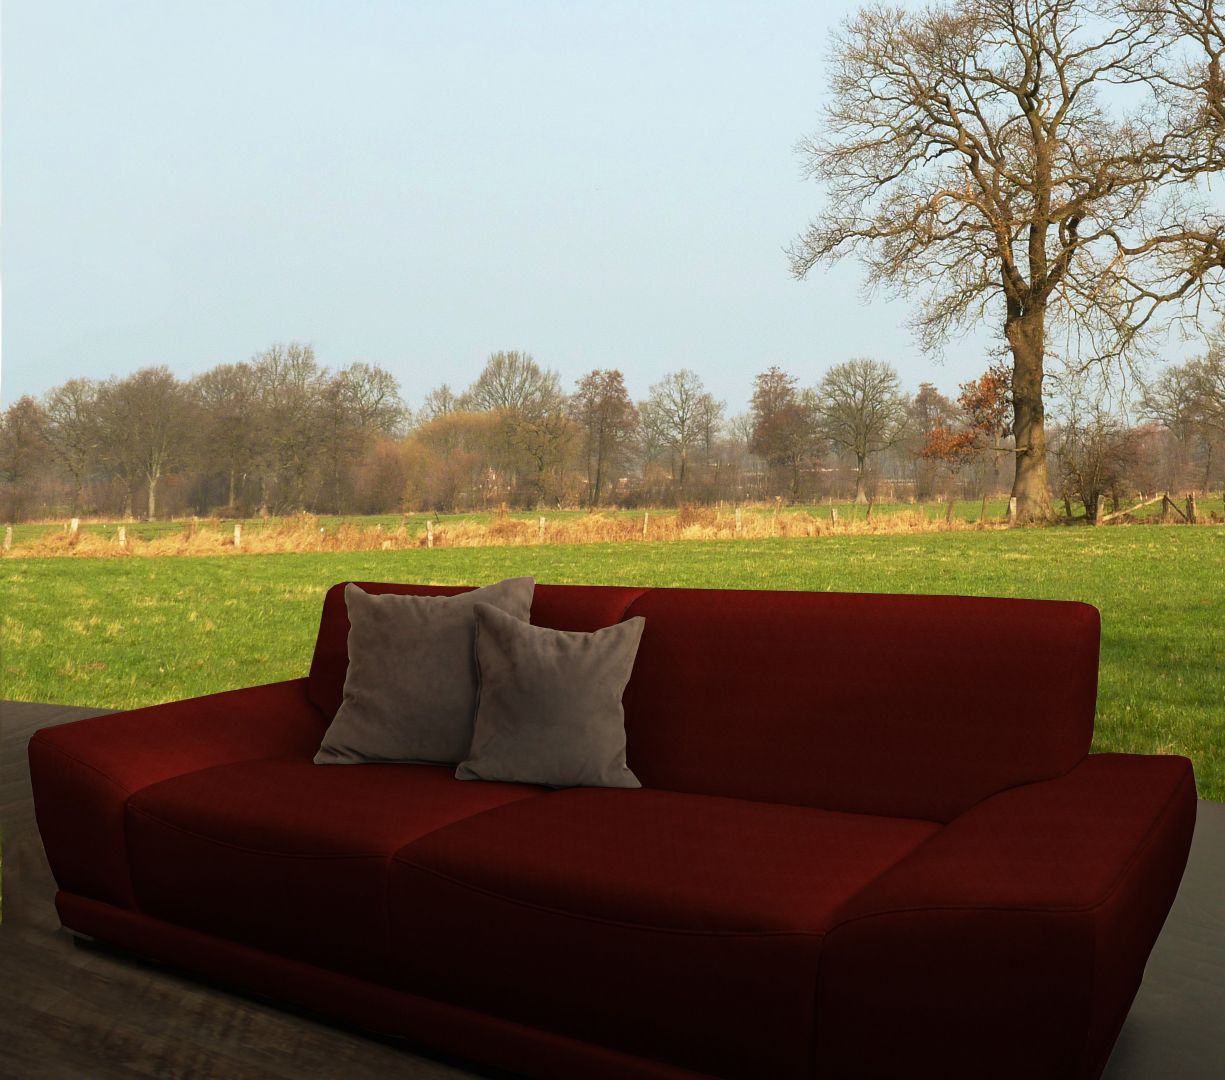 Sofa ogrodowa, tapicerowana materiałami wytrzymałymi na warunki pogodowe. Materiały obiciowe pochodzą z firmy FabFab 
Fot. Archiwum